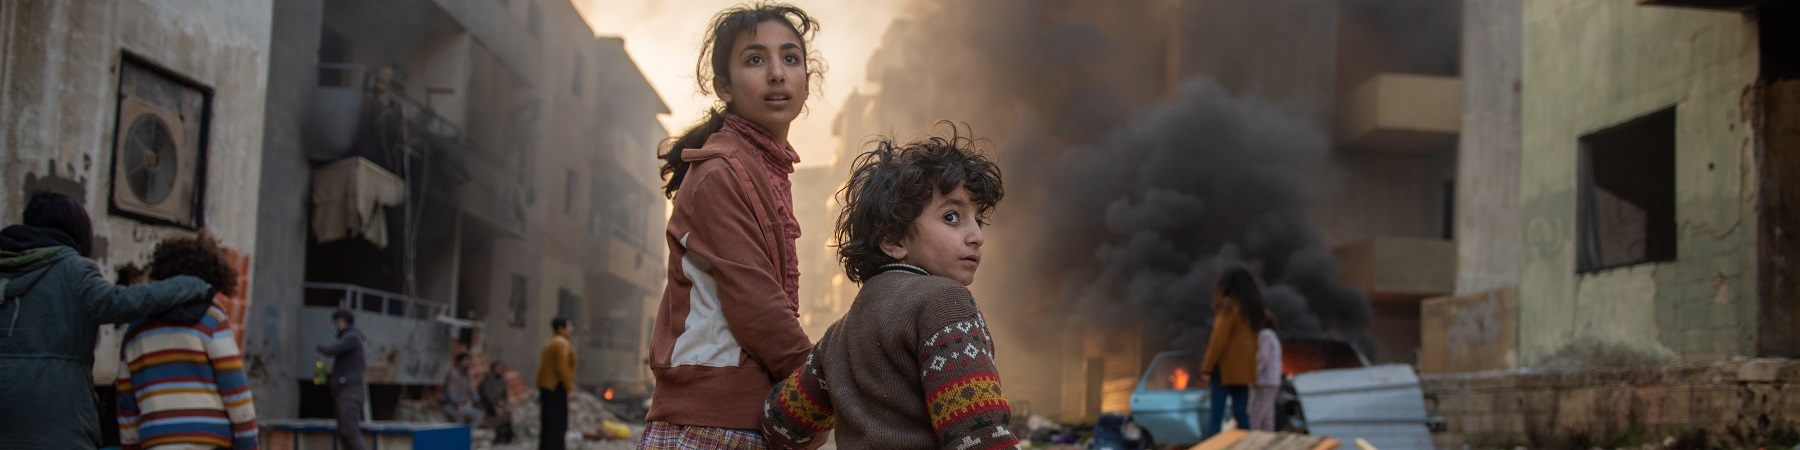 bambina e bambino in un contesto di guerra